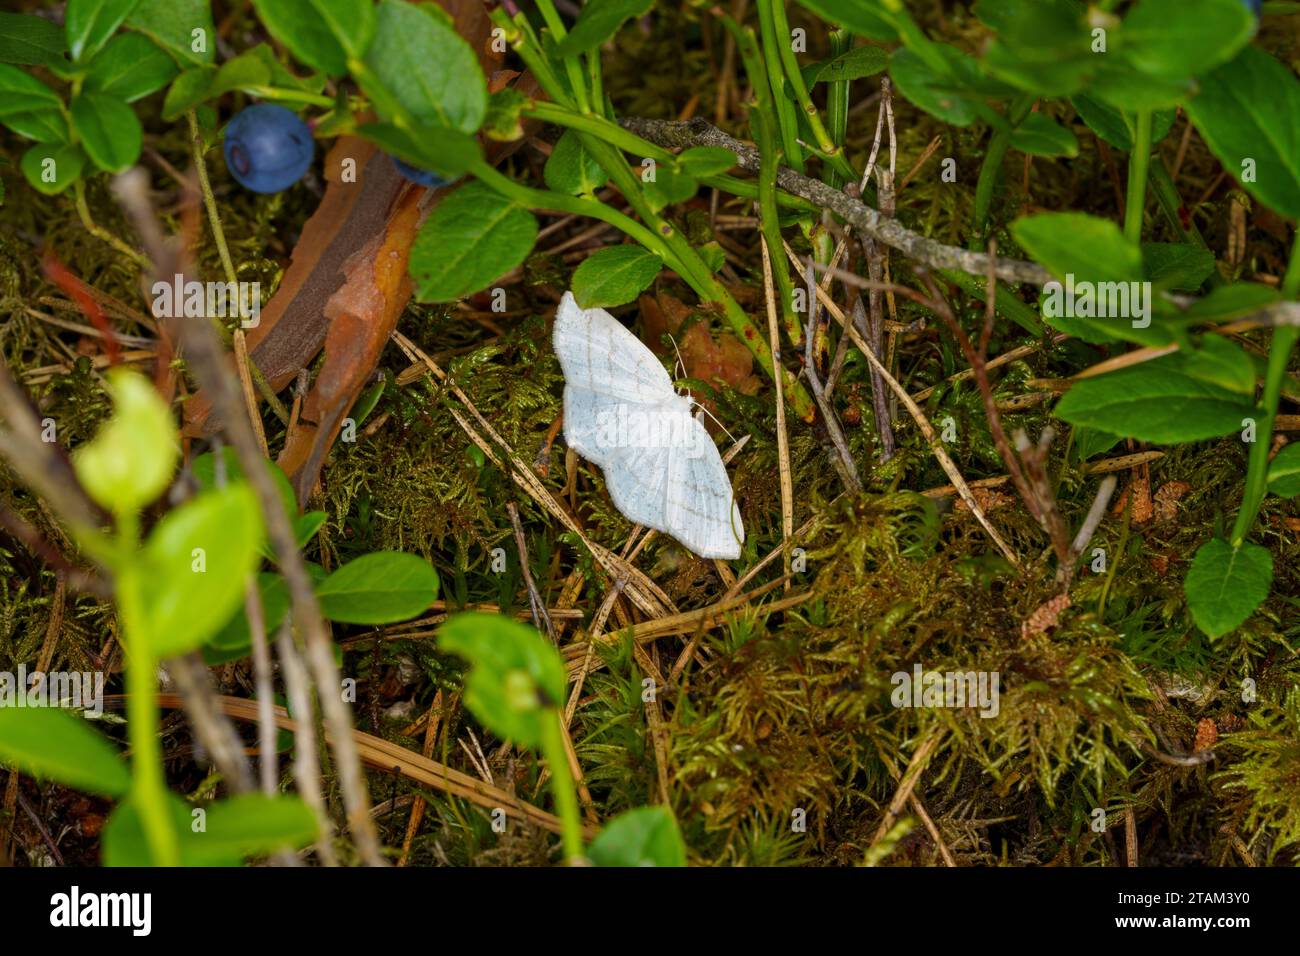 Cabera pusaria famille Geometridae genre Cabera vague blanche commune papillon sauvage fond d'écran d'insecte de nature sauvage, image, photographie Banque D'Images